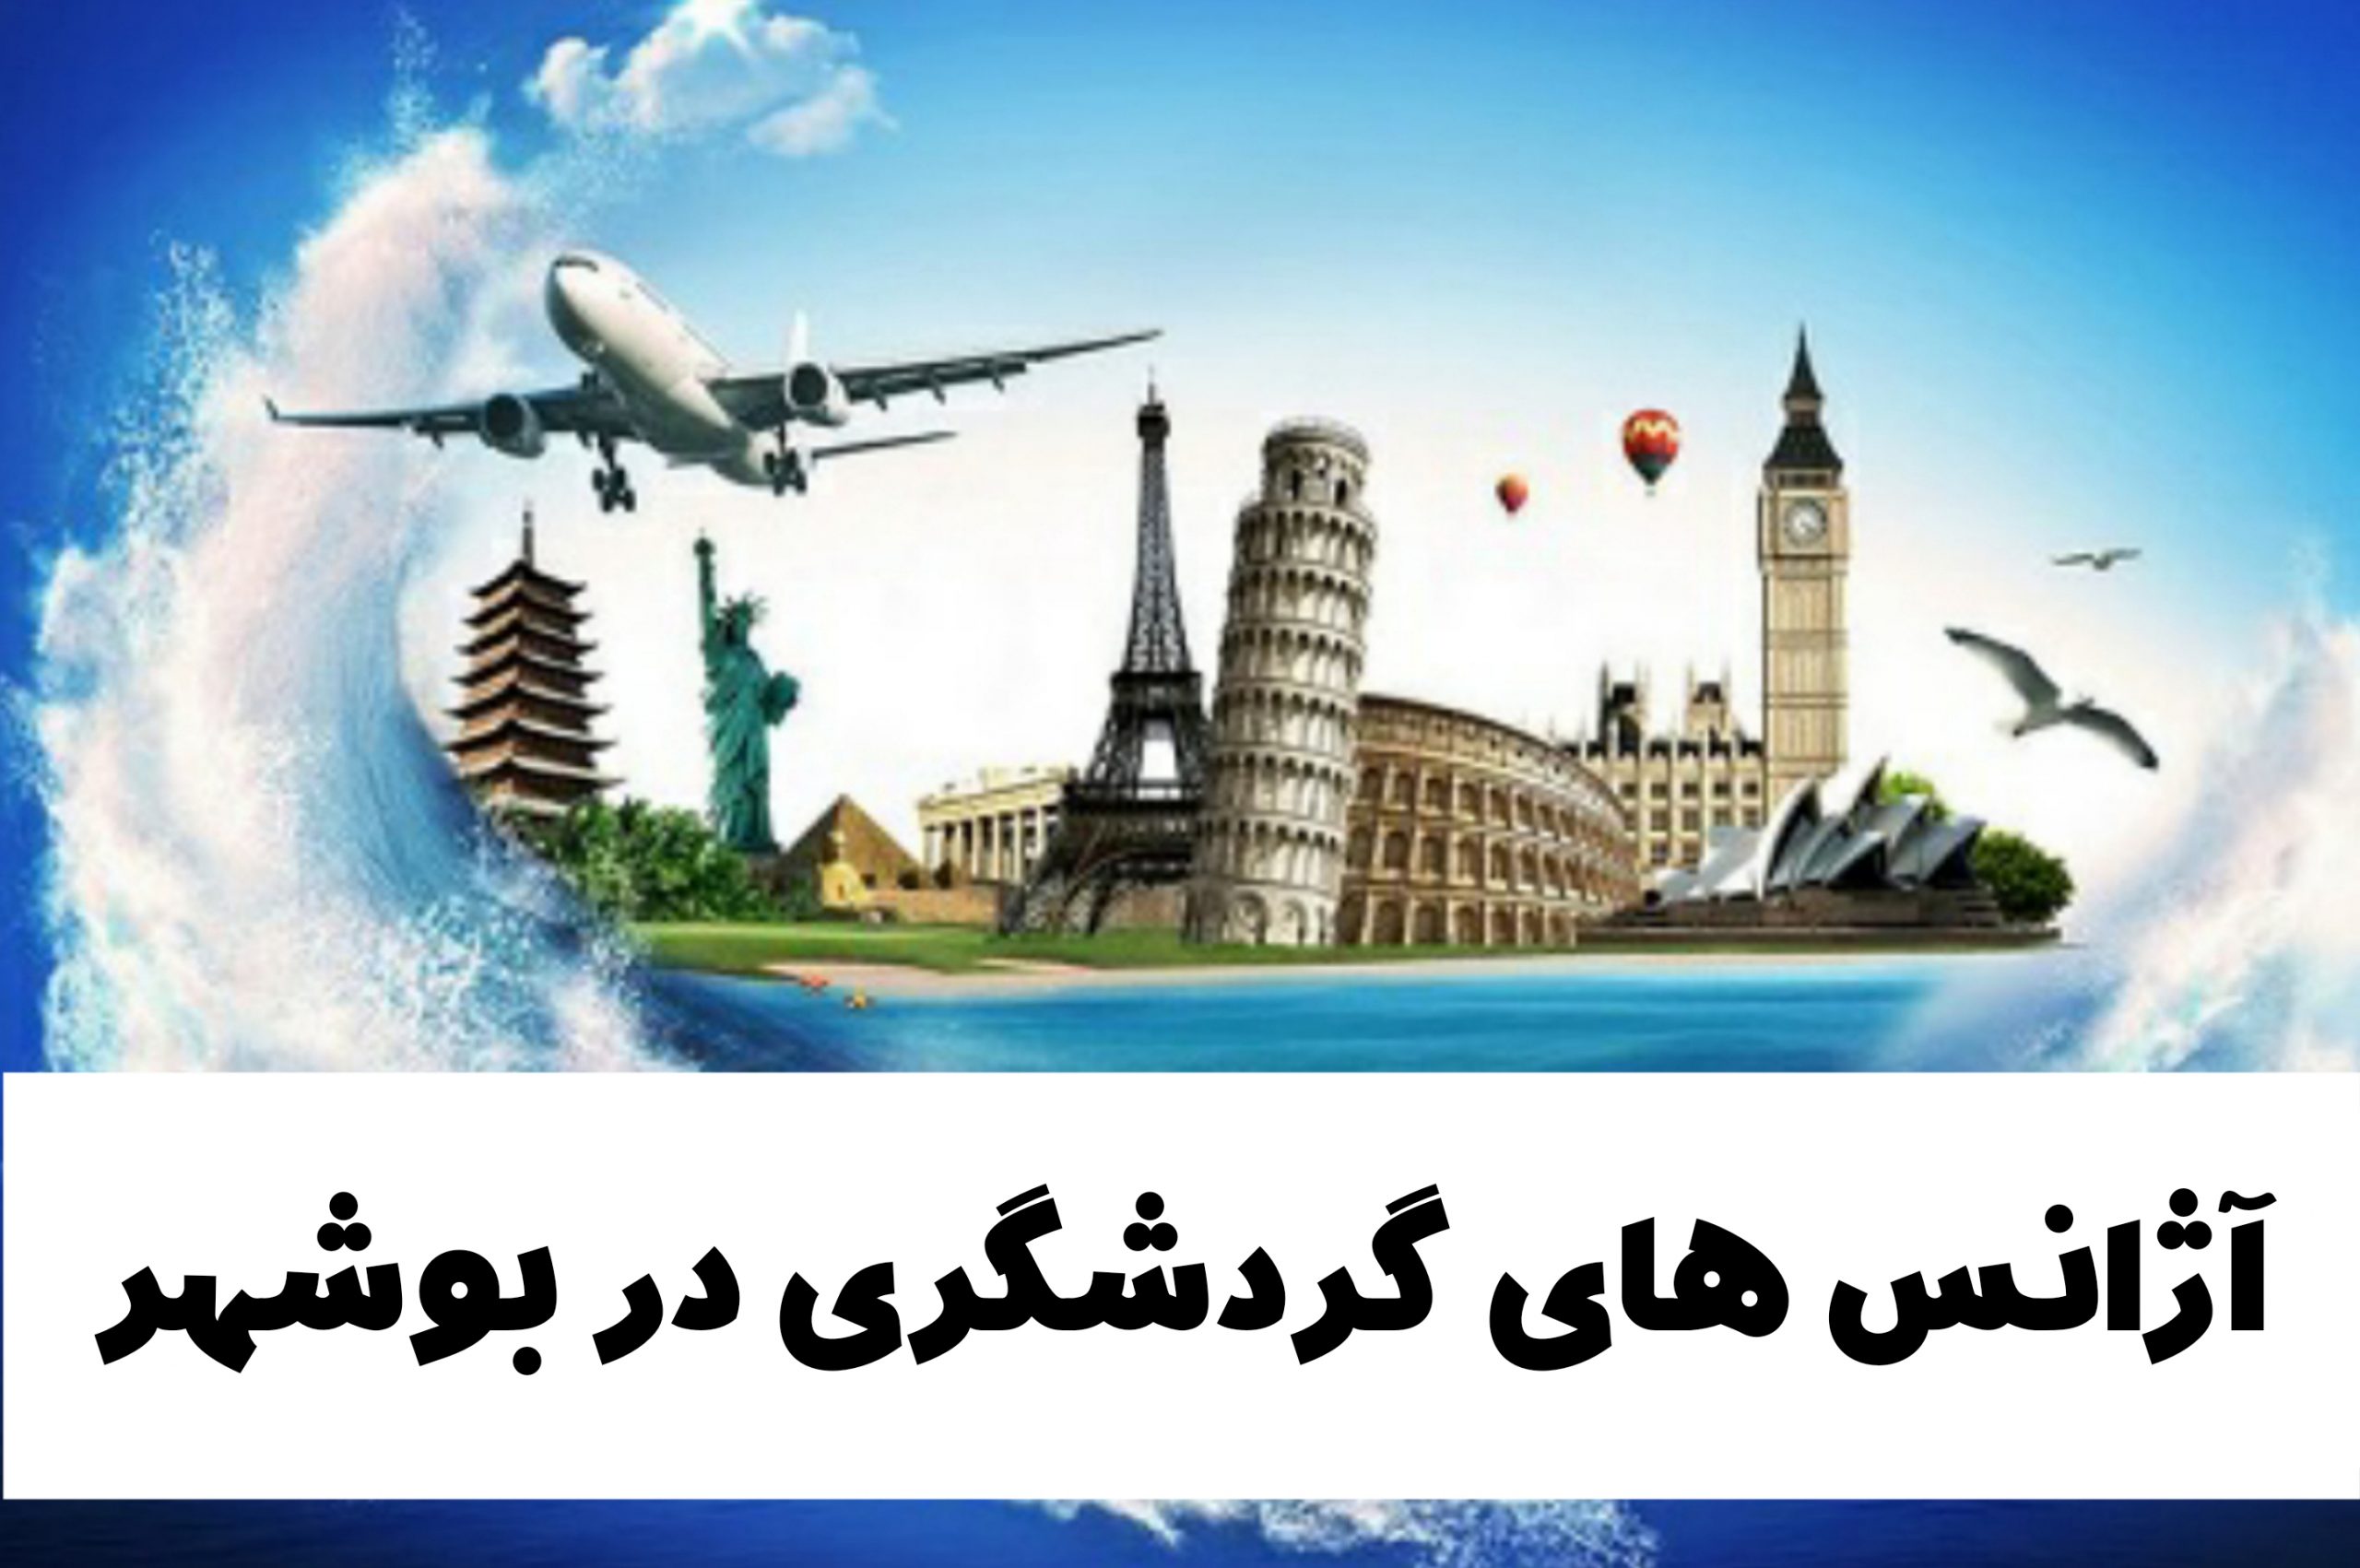 آژانس های گردشگری در بوشهر